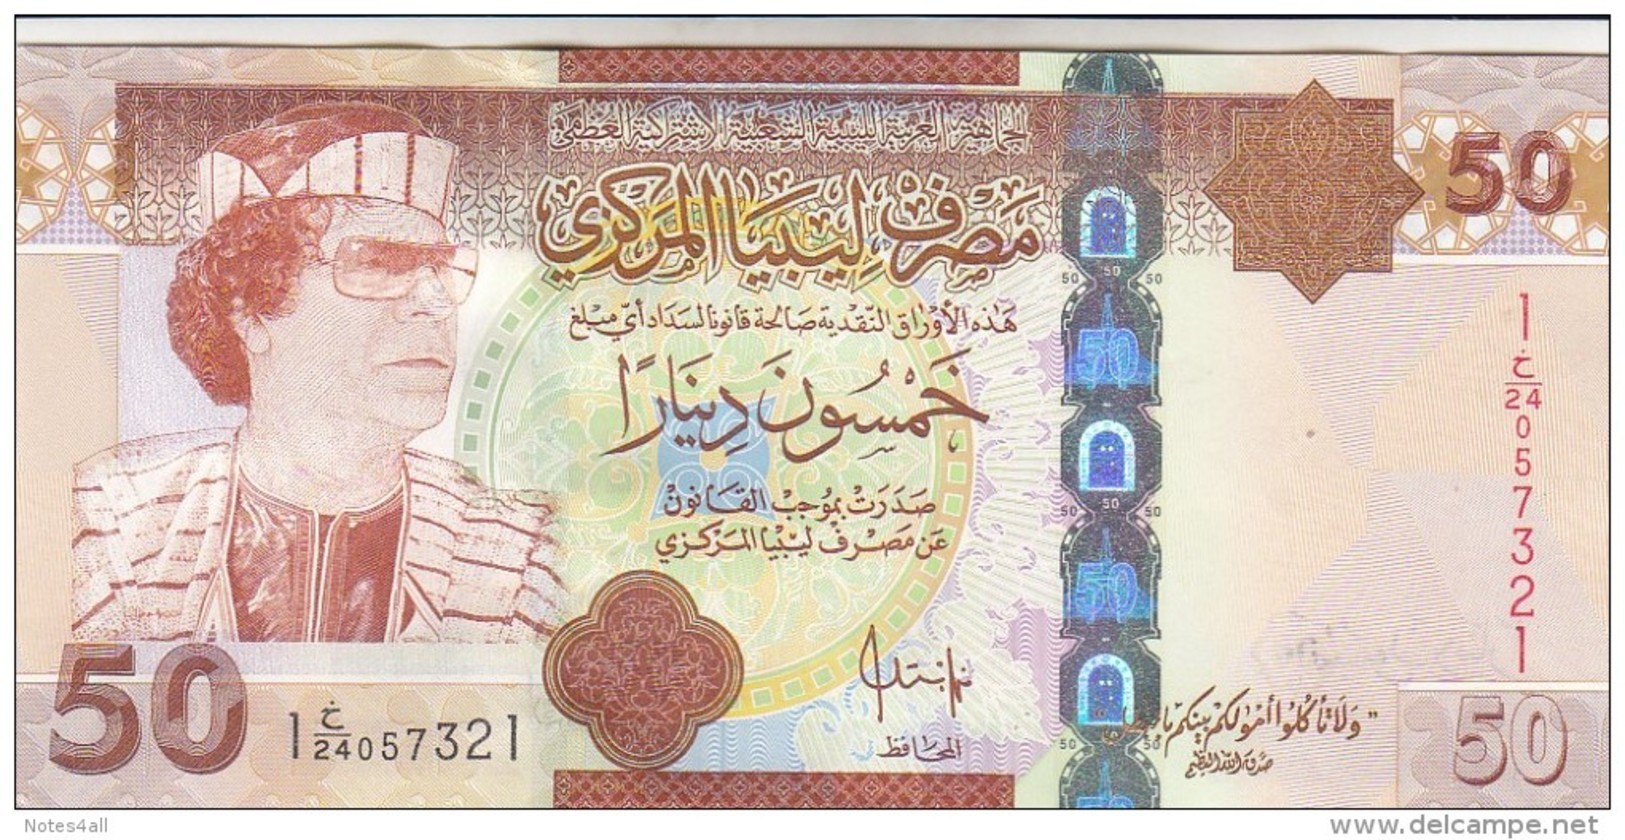 LIBYA 50 DINARS 2008 2009 P-75 GADDAFI UNC */* - Libye